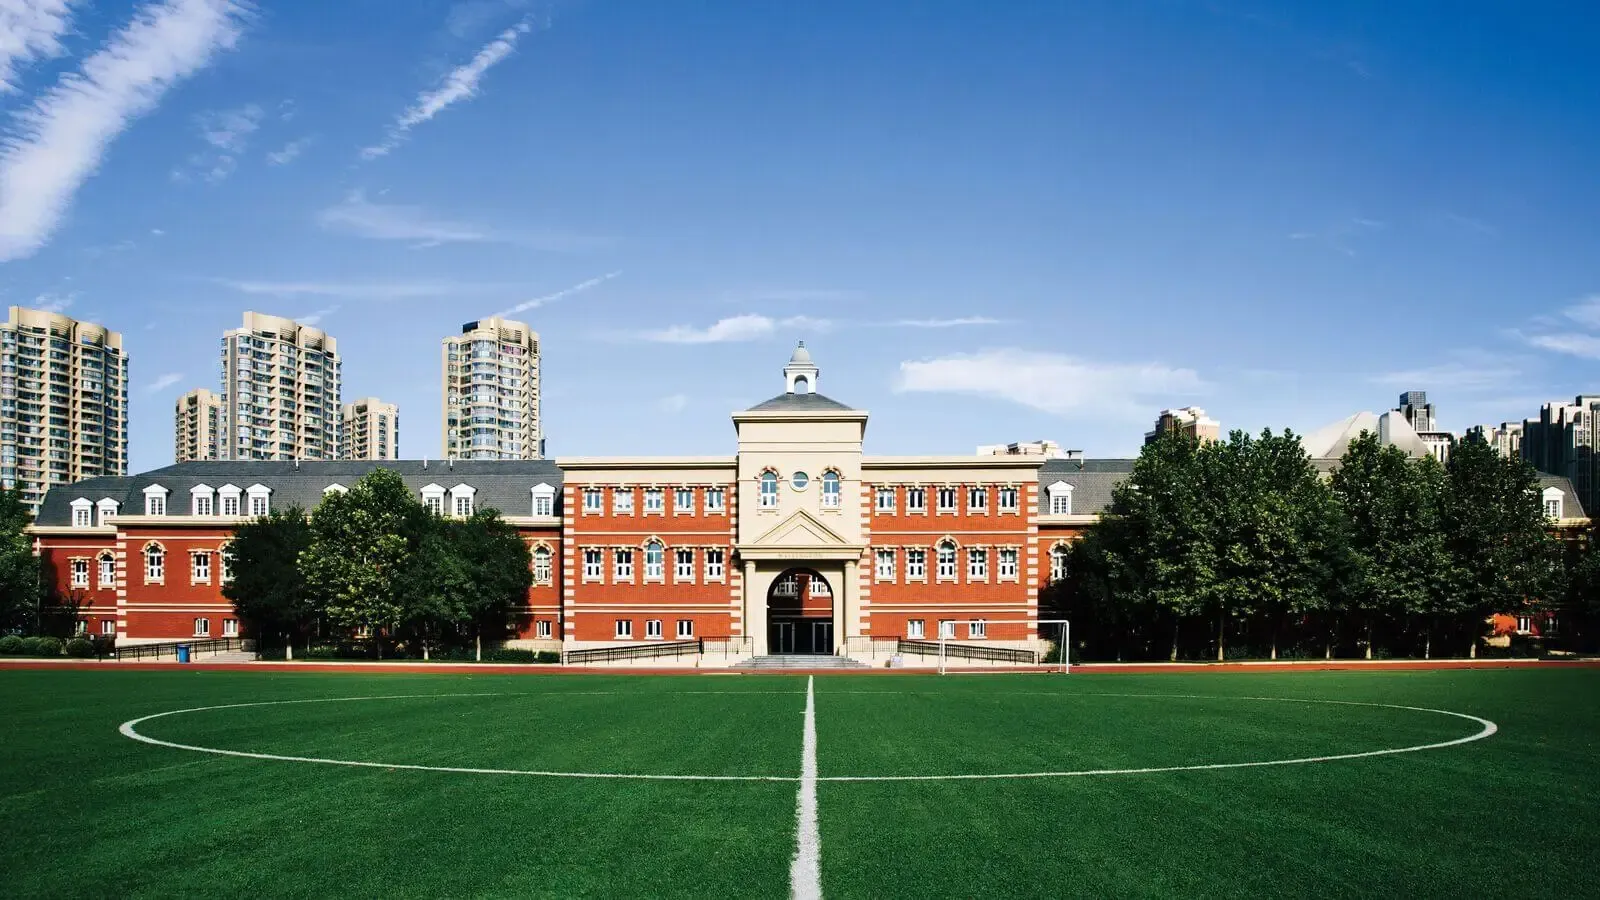 Tianjin Boarding School